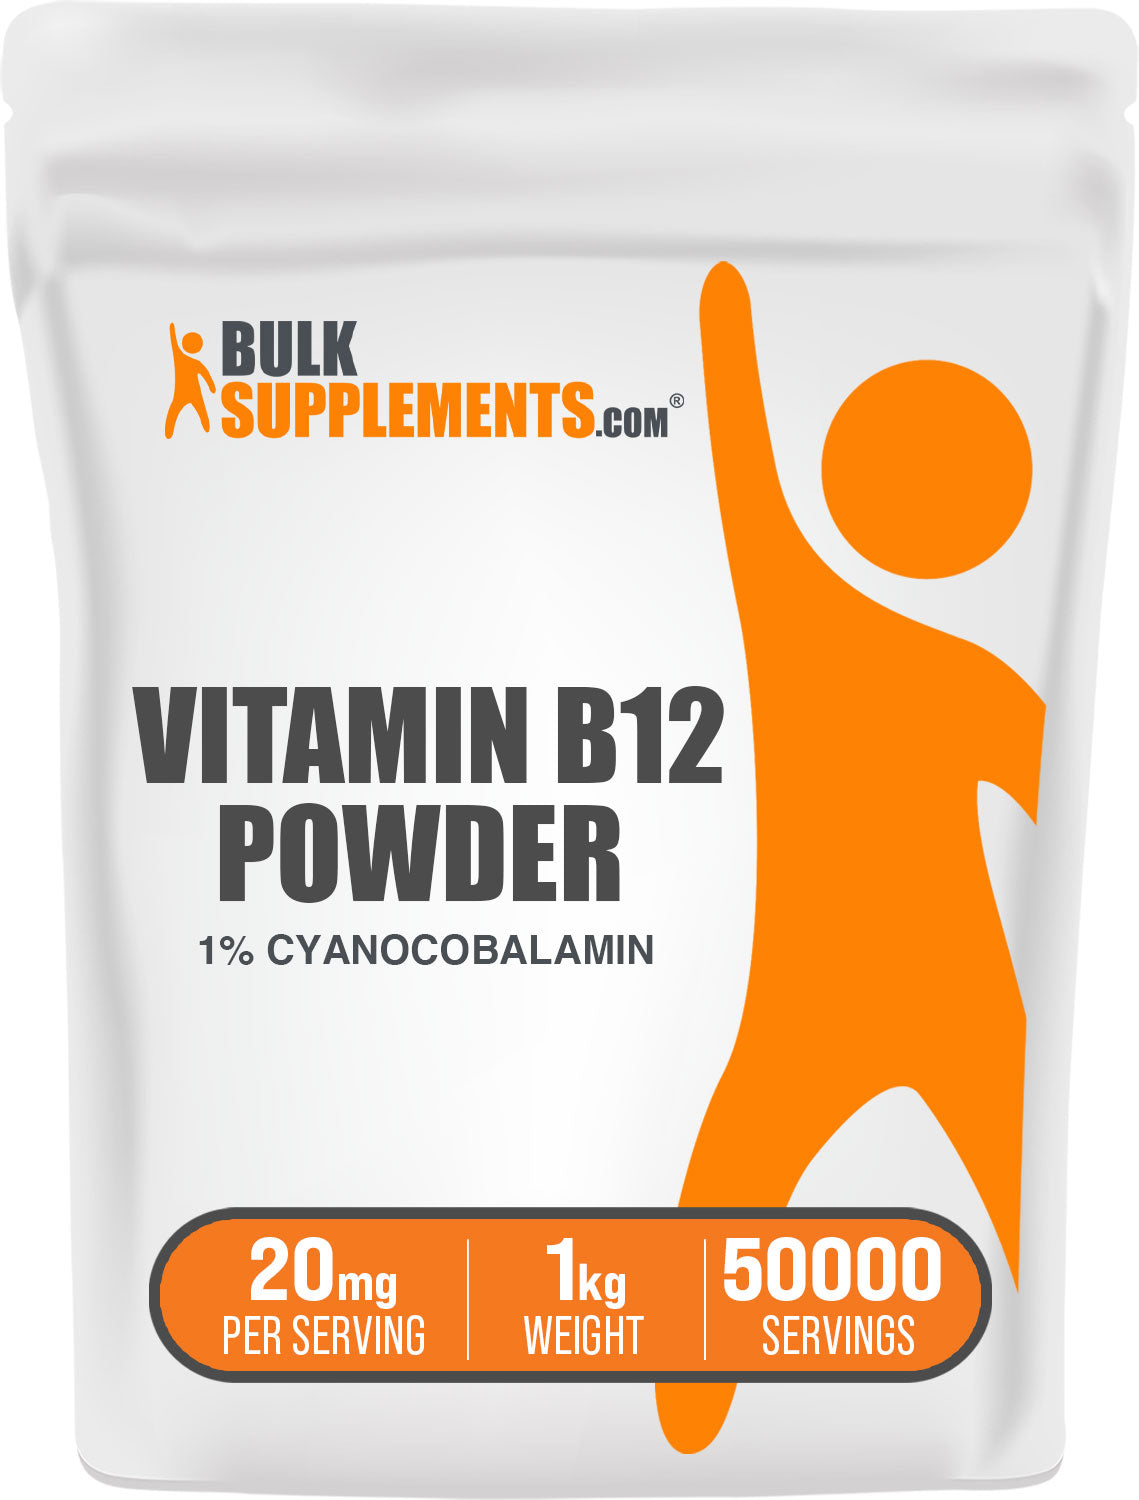 BulkSupplements Vitamin B12 Powder 1% Cyanocobalamin 1kg bag